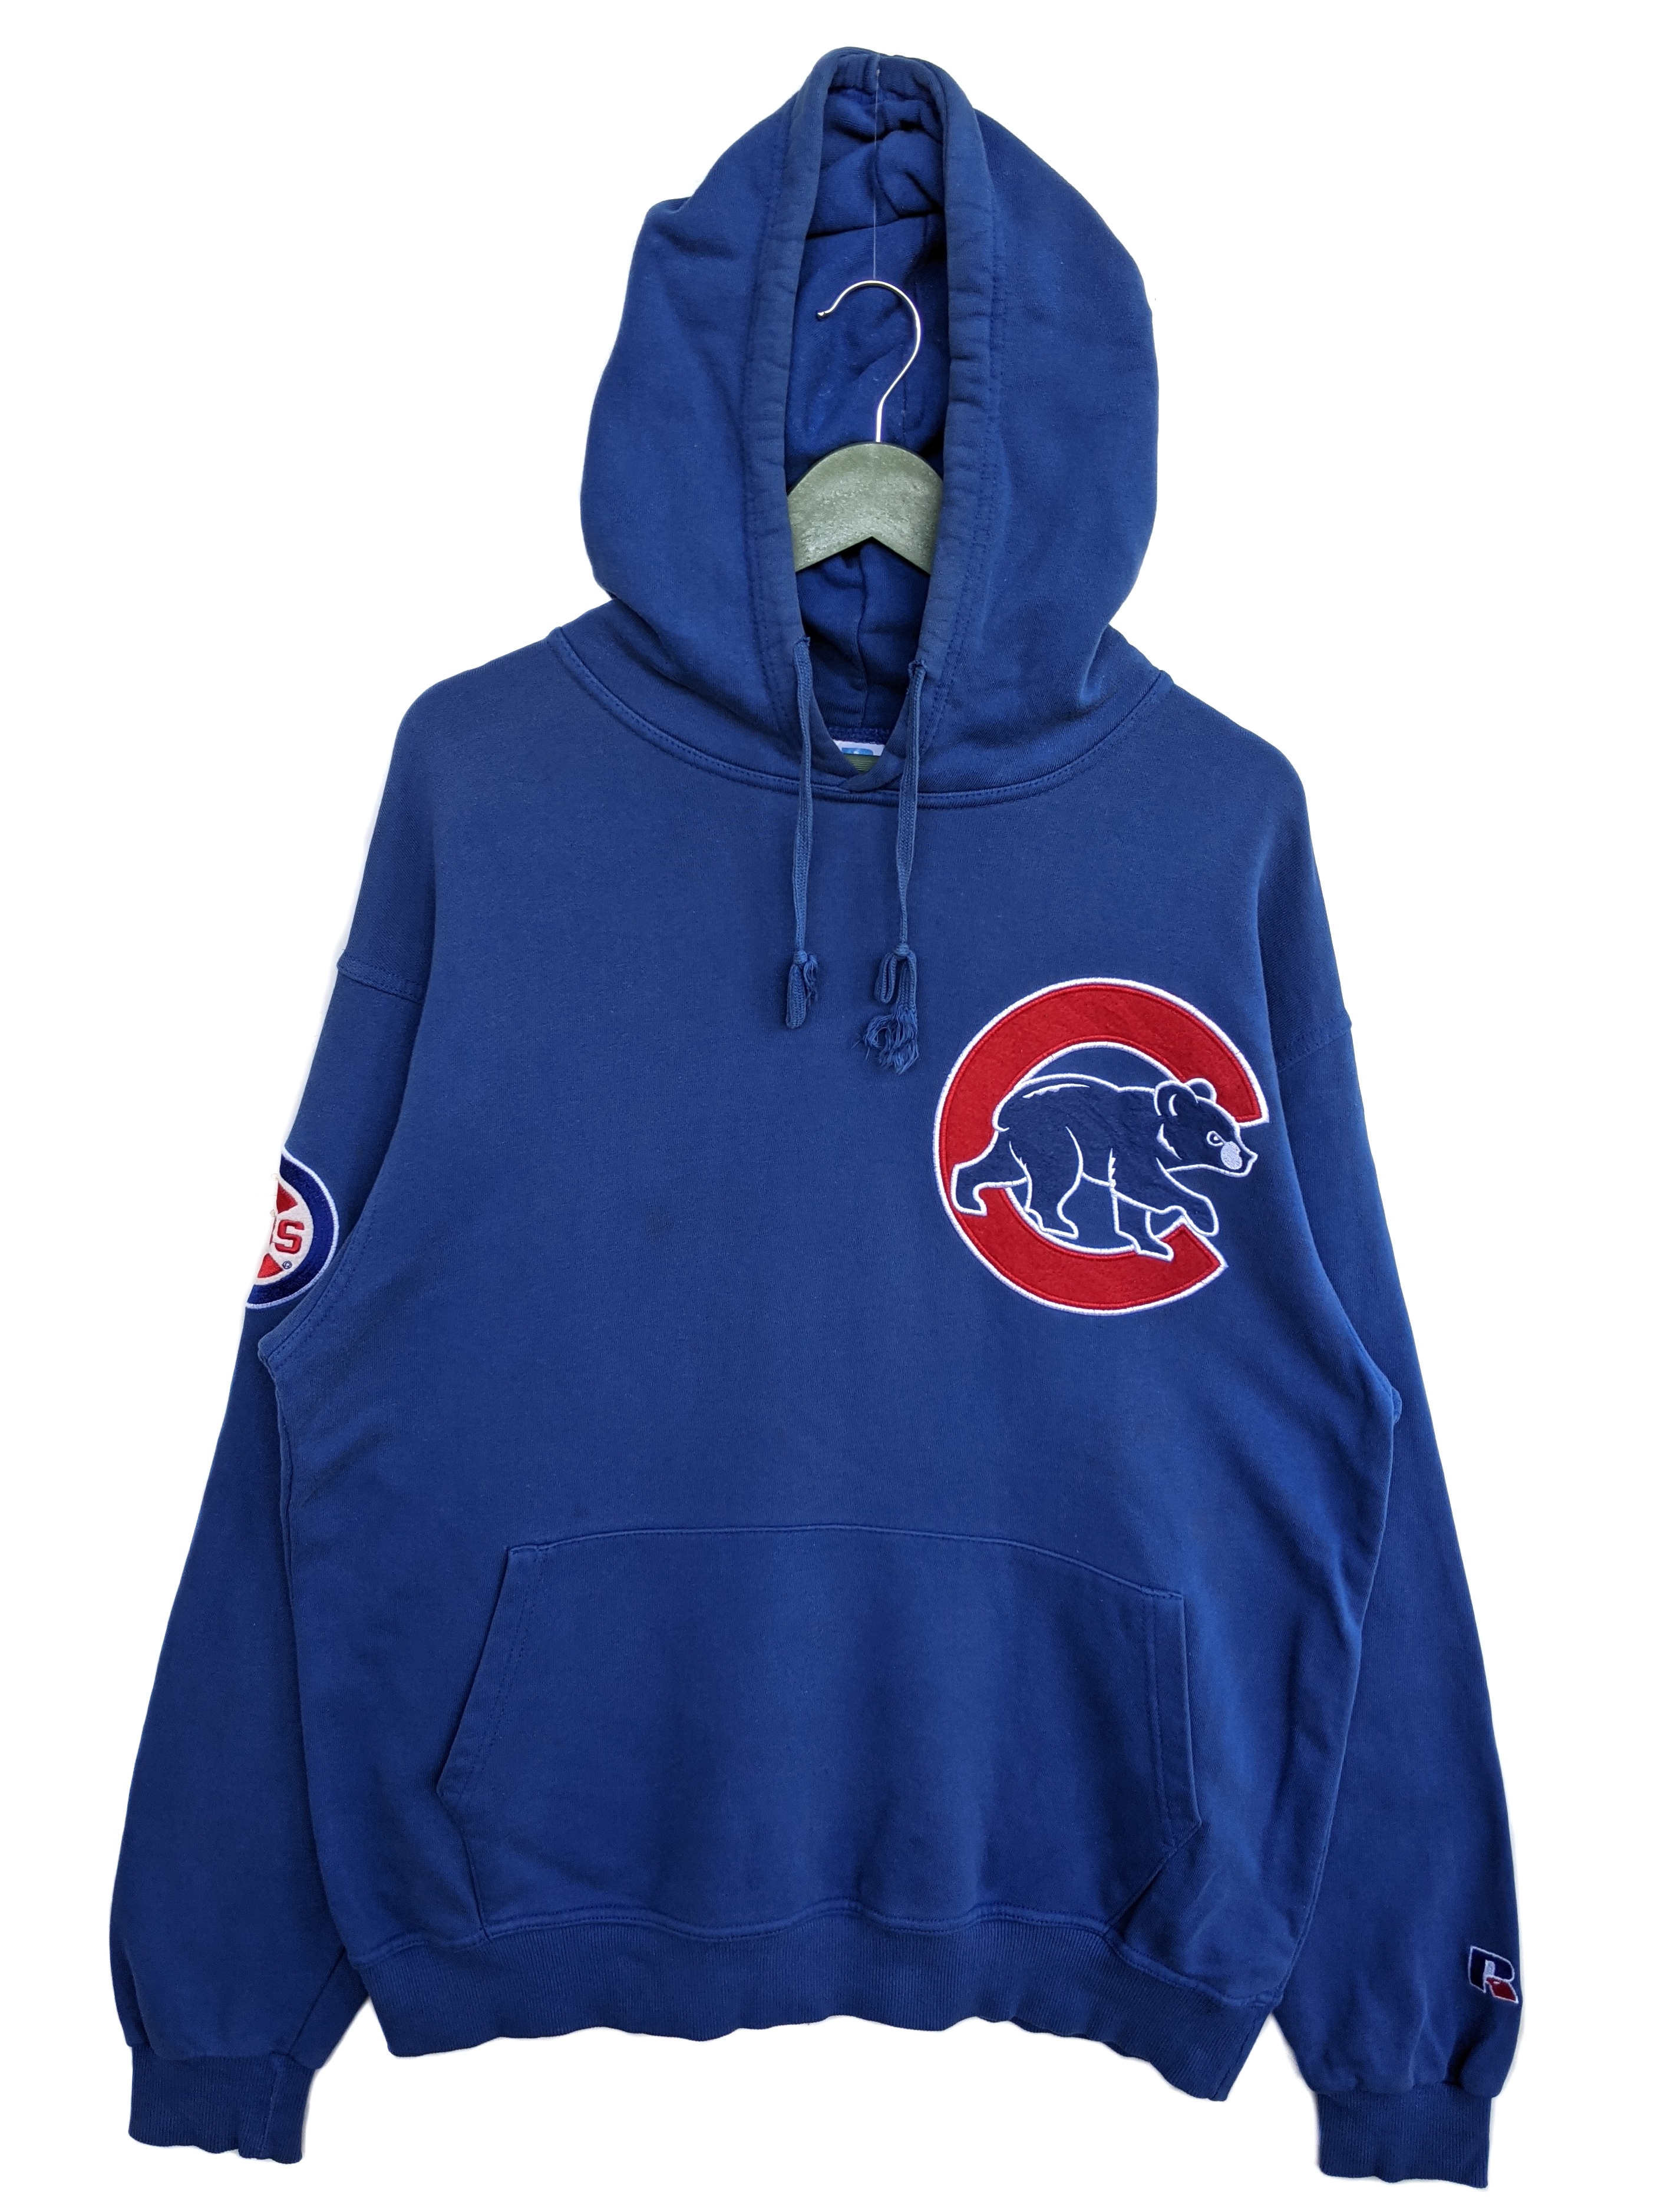 Vintage 90's Chicago Cubs Blue Crewneck Sweatshirt Size XL 